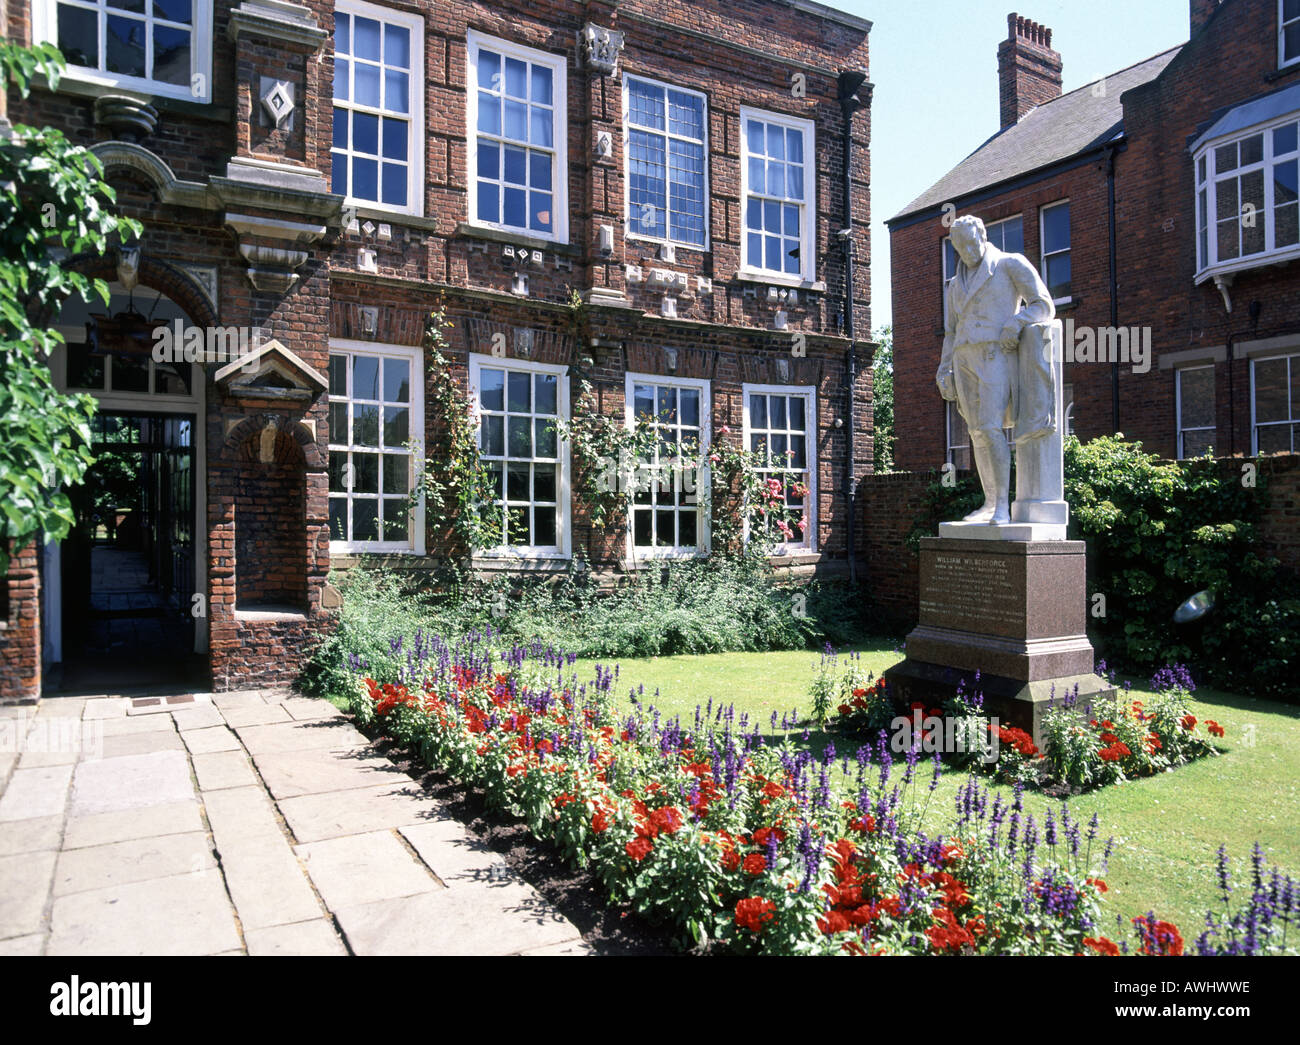 Statue von William Wilberforce vor Garten in seinem Geburtsort Wilberforce House in Hull Yorkshire England UK jetzt ein Museum über Sklaven & Sklaverei Stockfoto